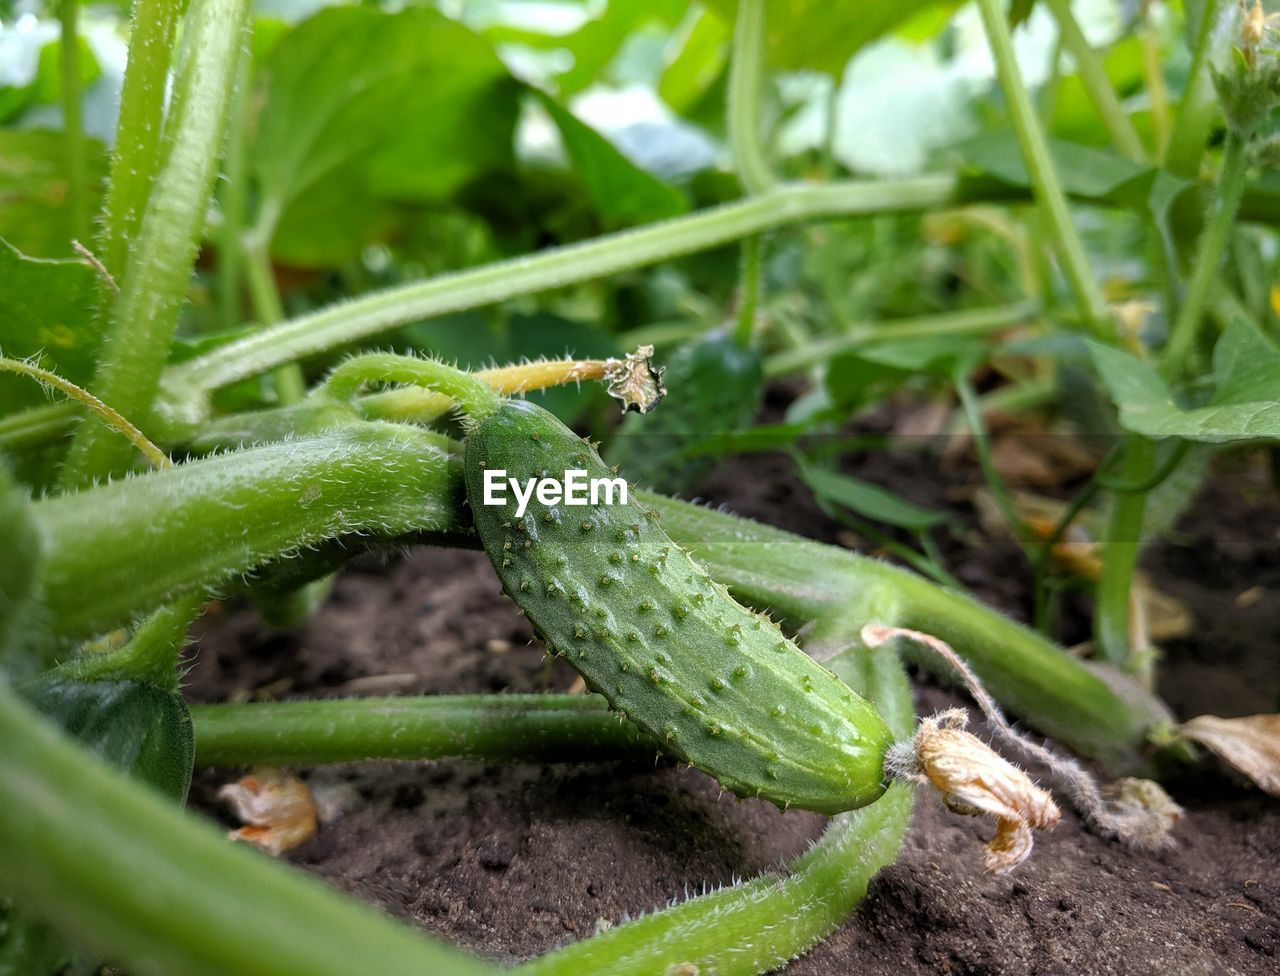 Close-up of cucumber in field